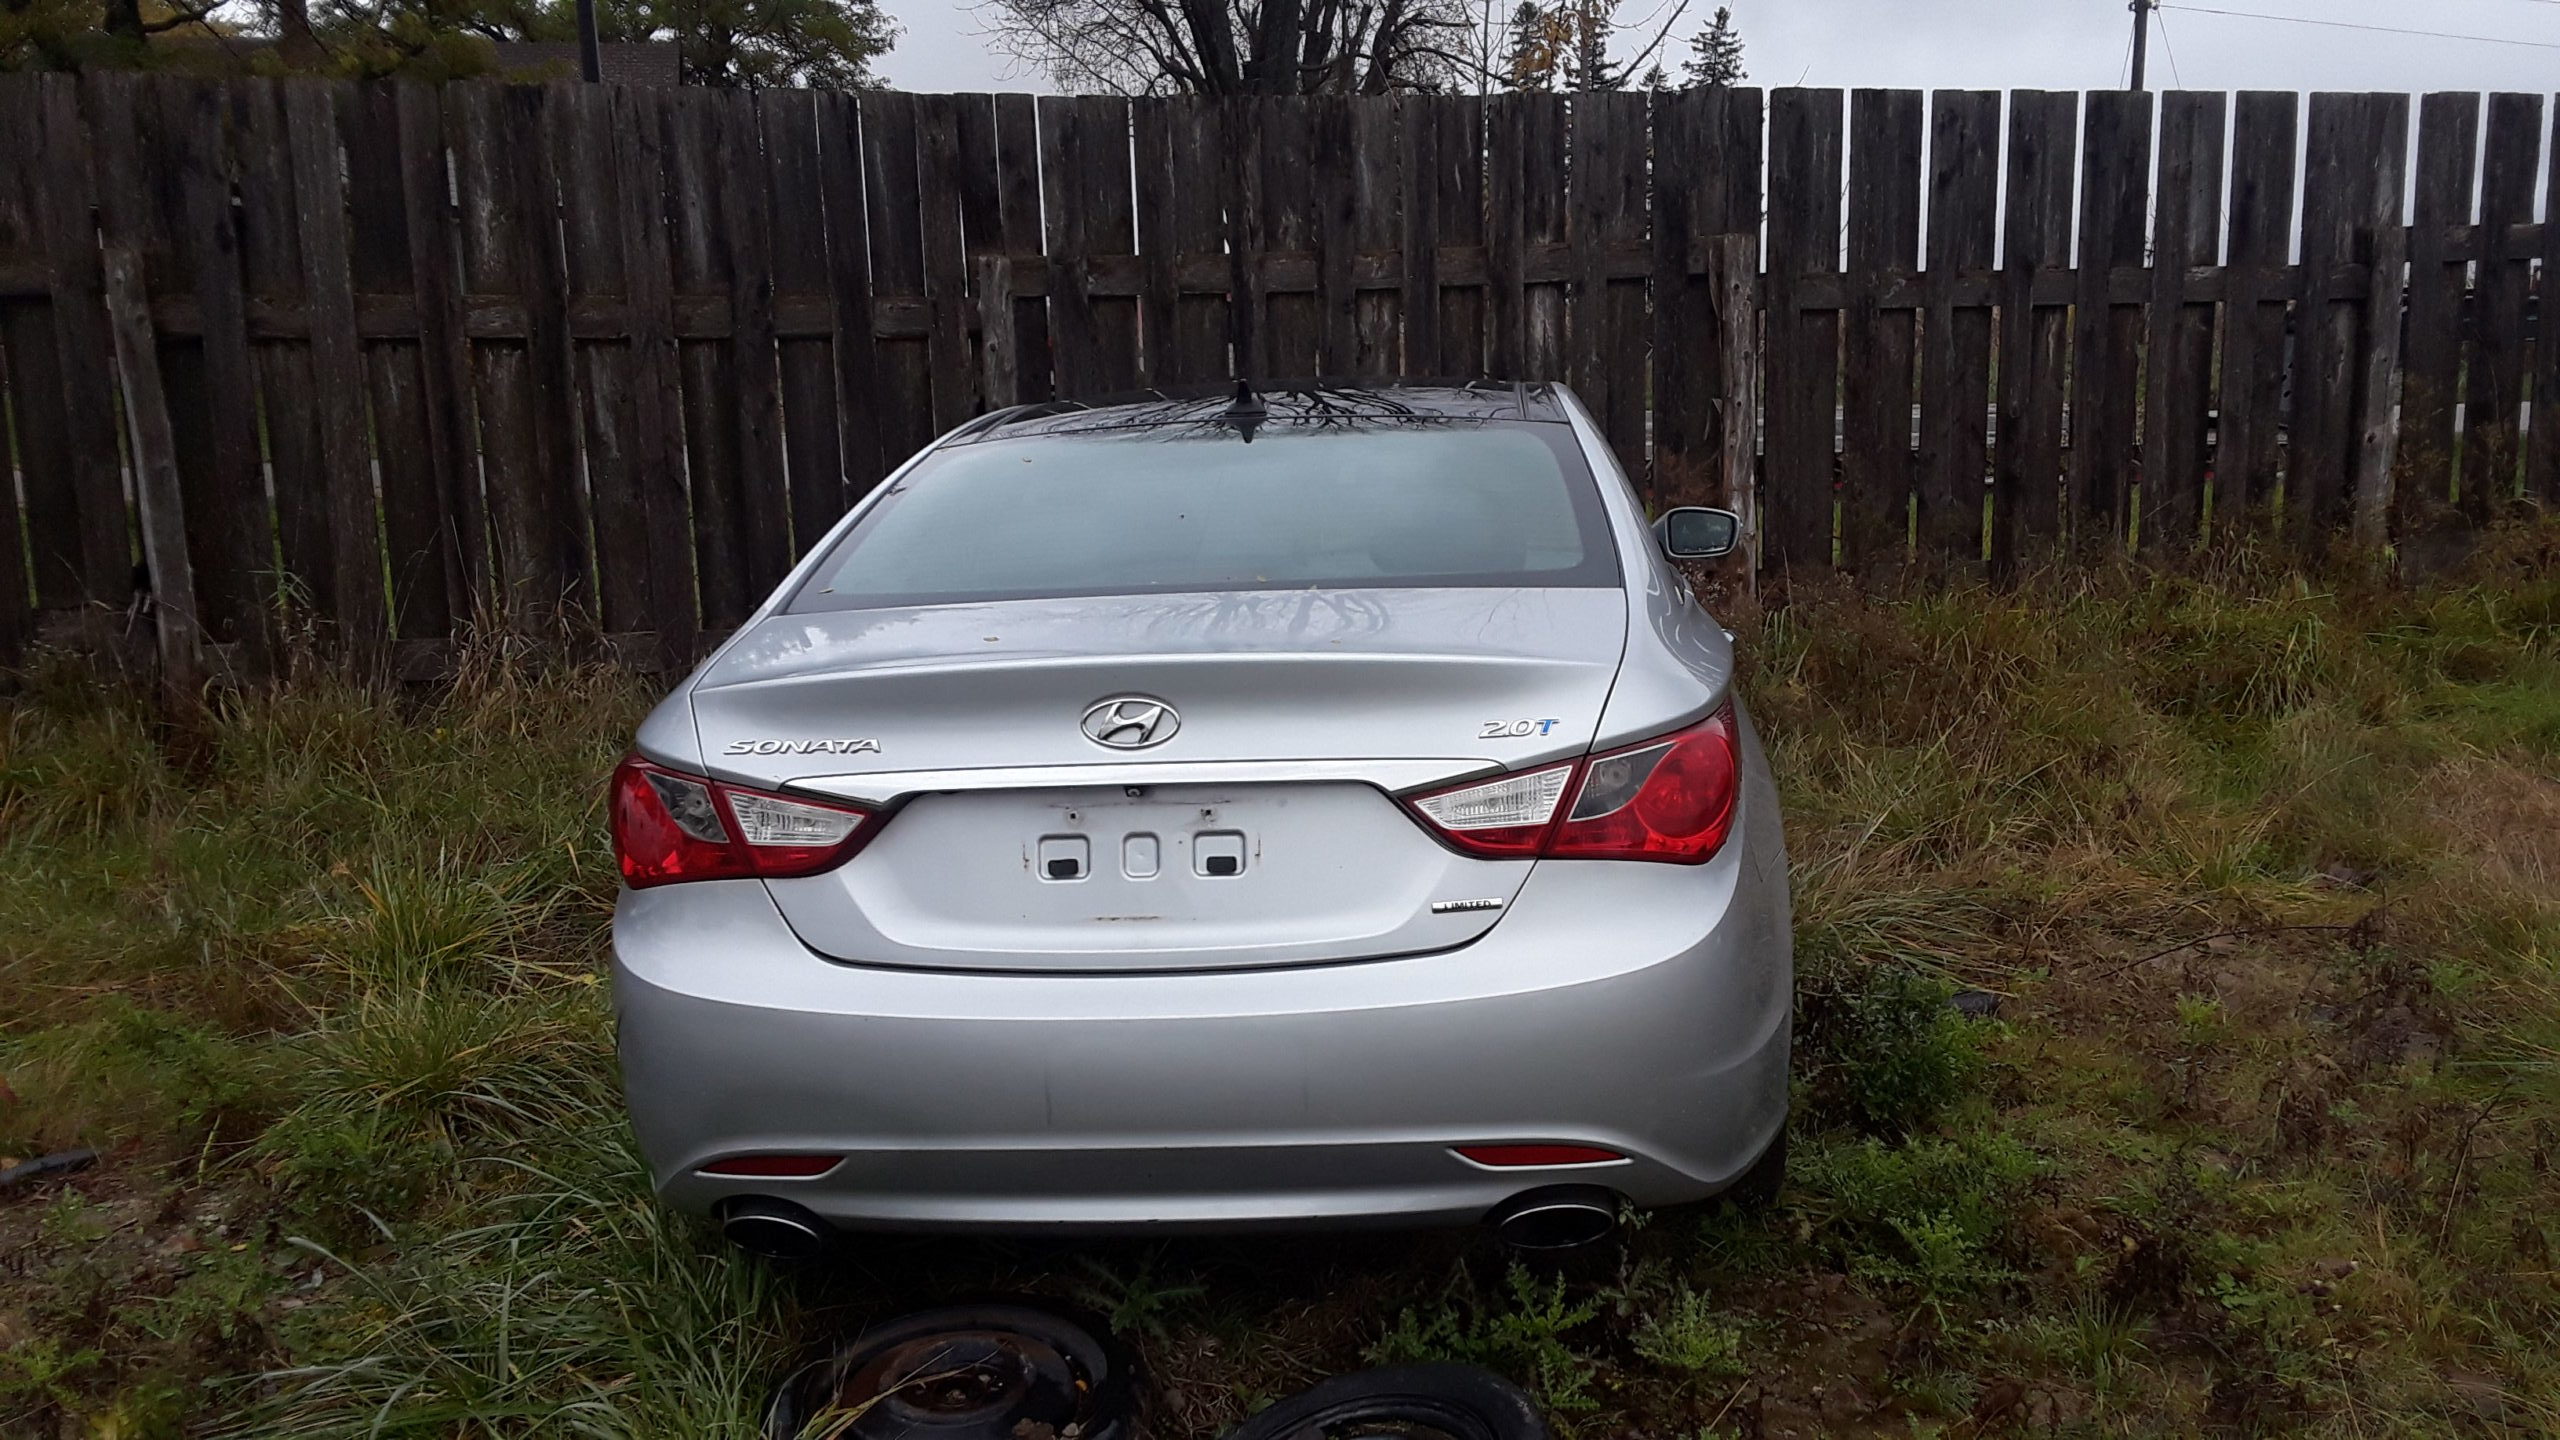 Hyundai sonata Scrap and Junk Car Removal